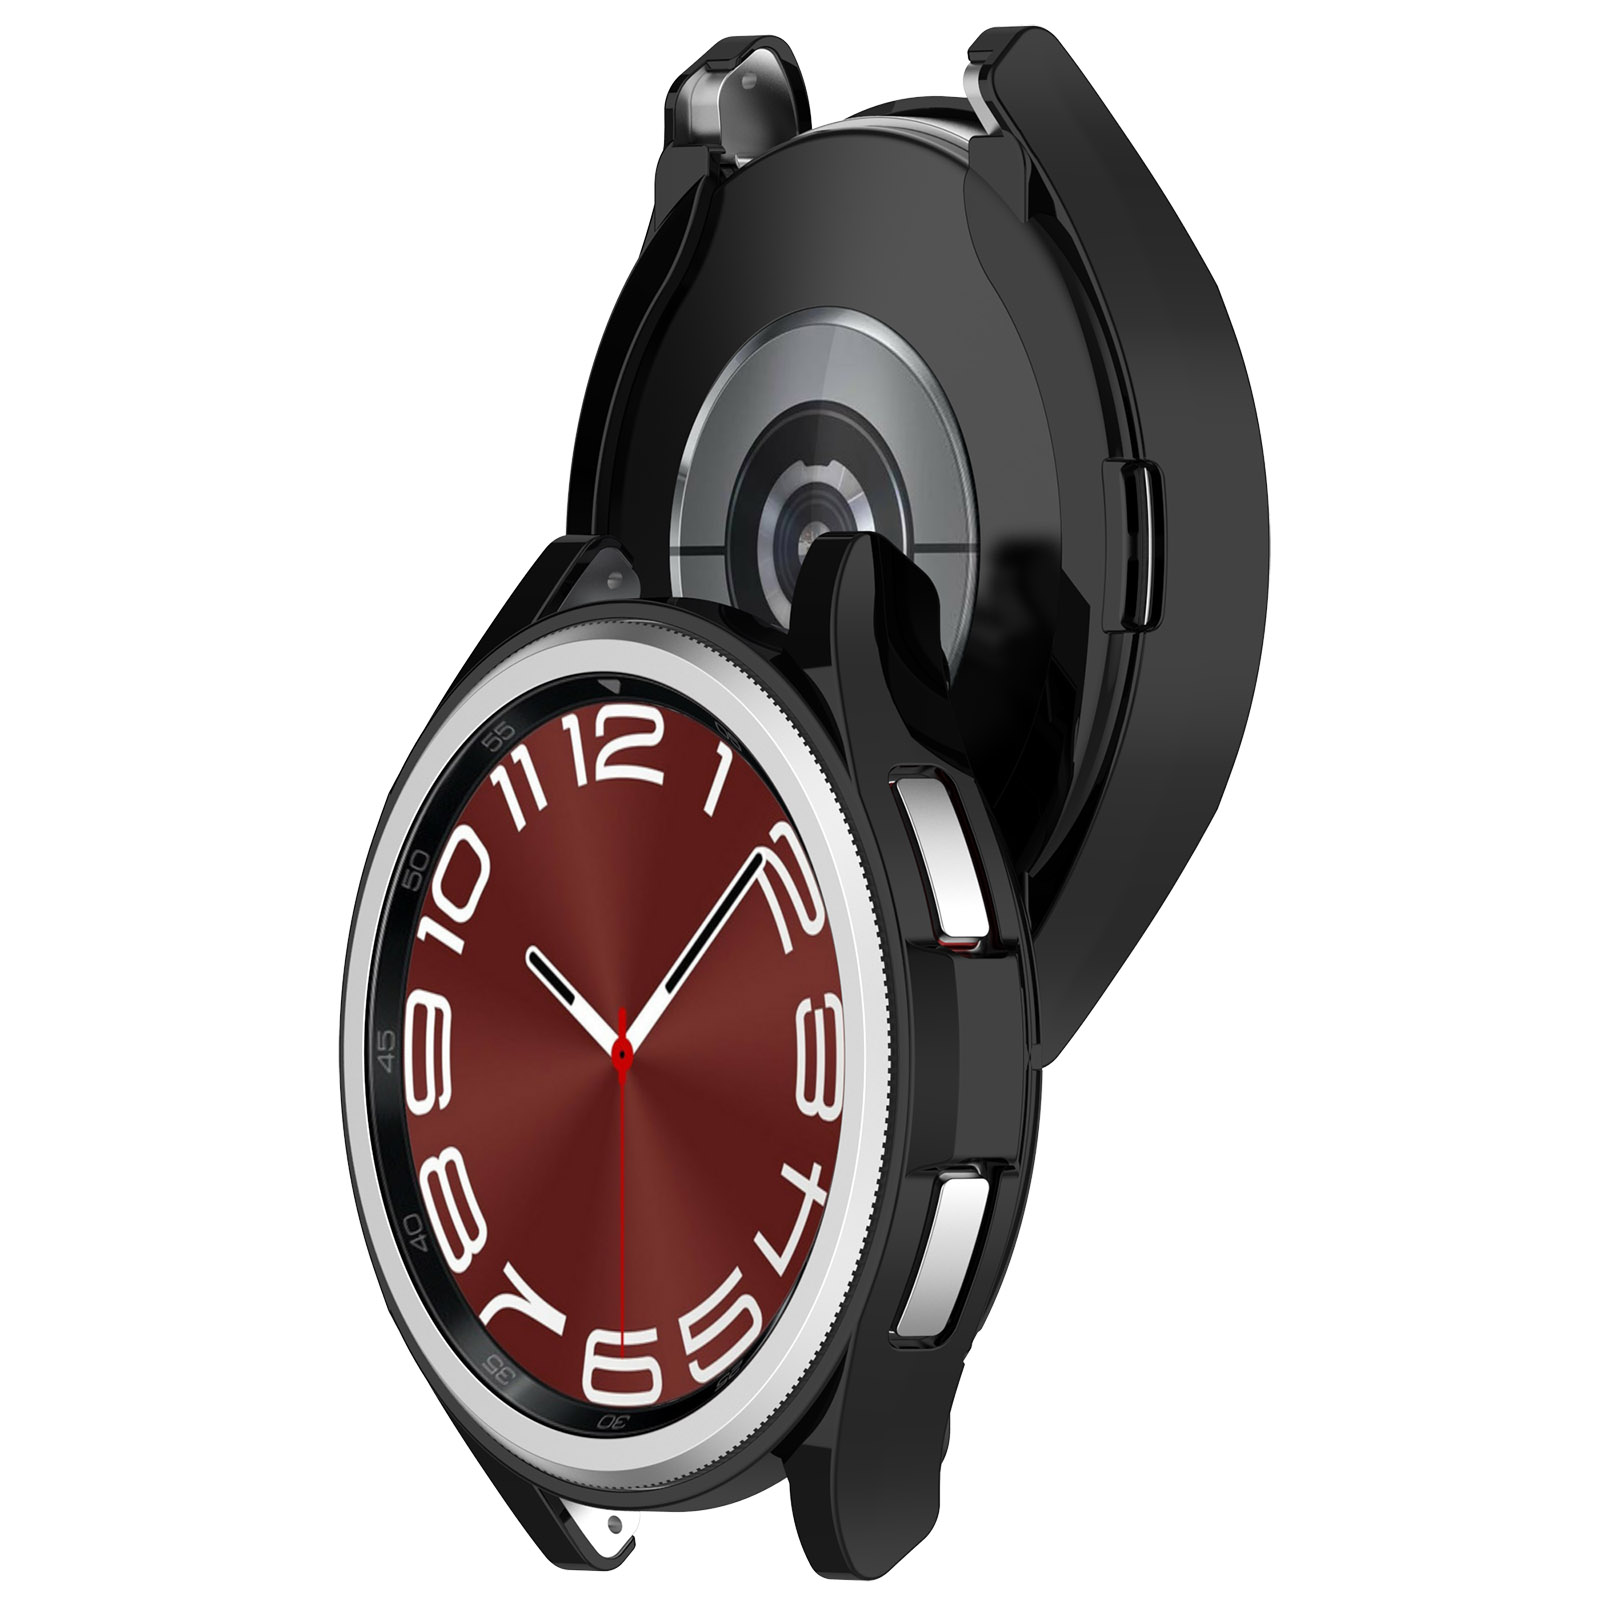 INF 291492 47 6 Watch Galaxy Samsung Classic mm) Uhrengehäuse(für